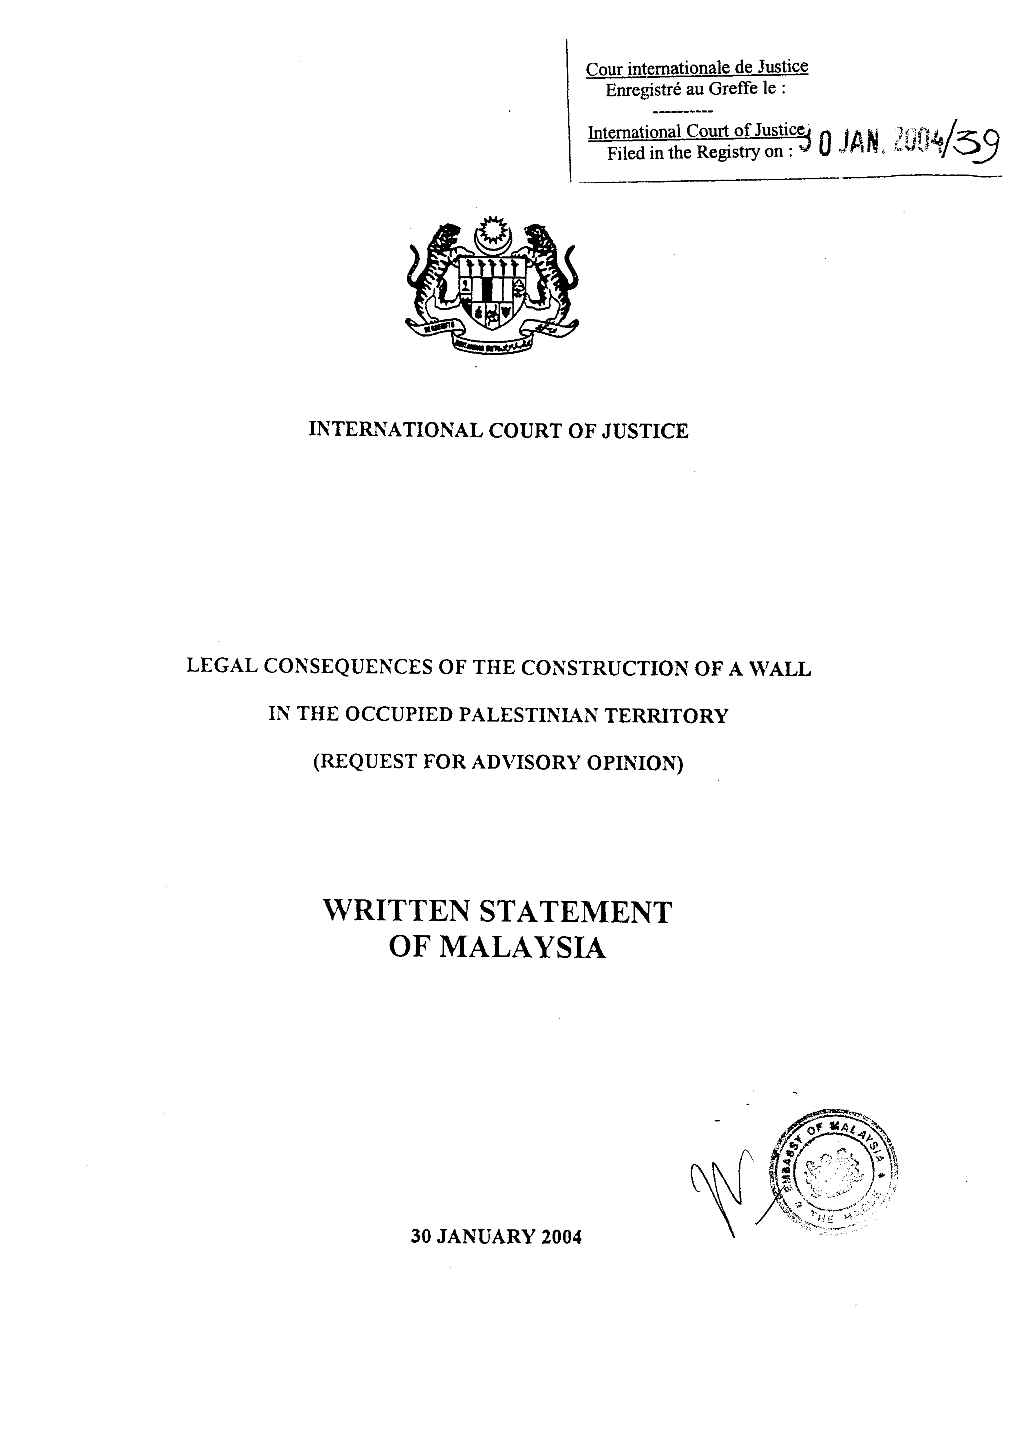 Written Statement of Malaysia